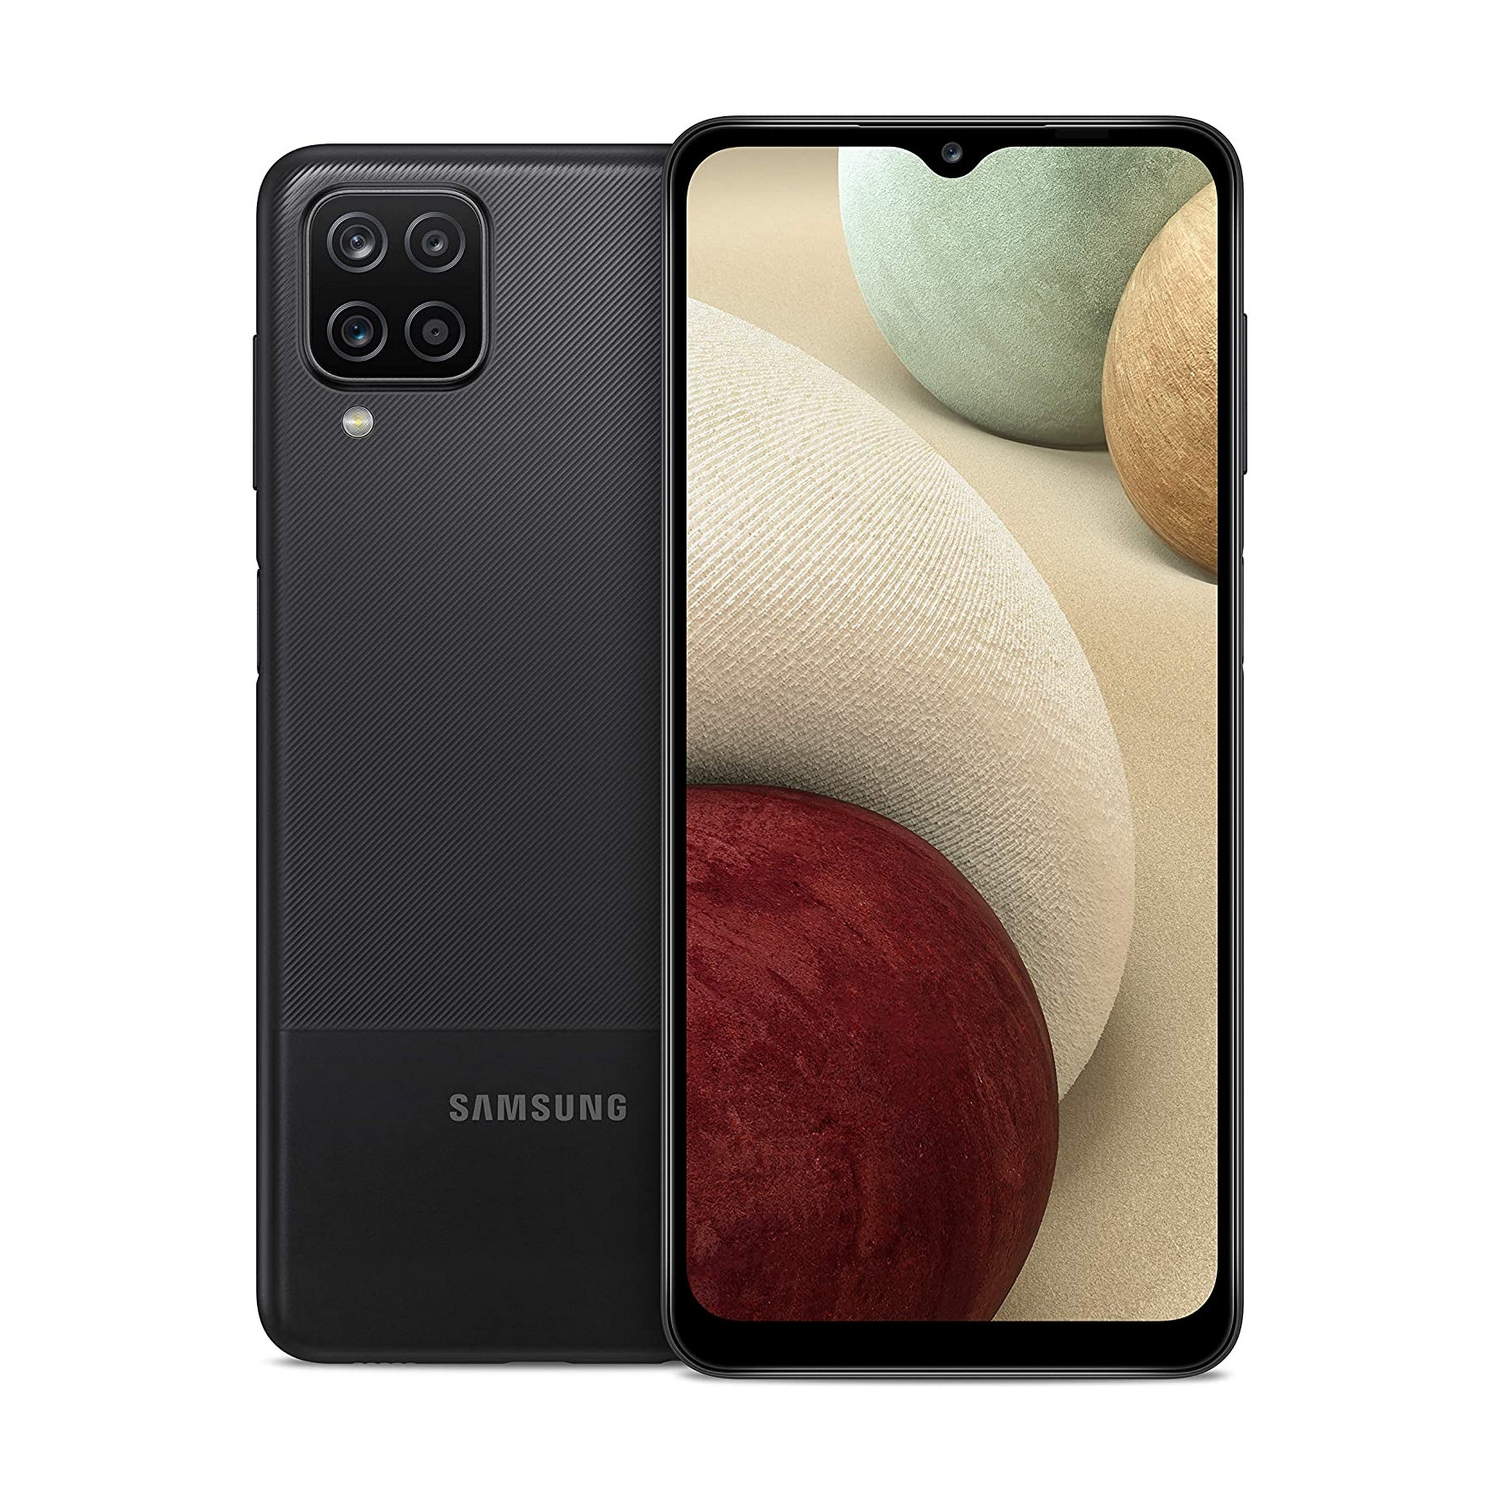 Samsung Galaxy A12 | Black | 32 GB | Refurbished